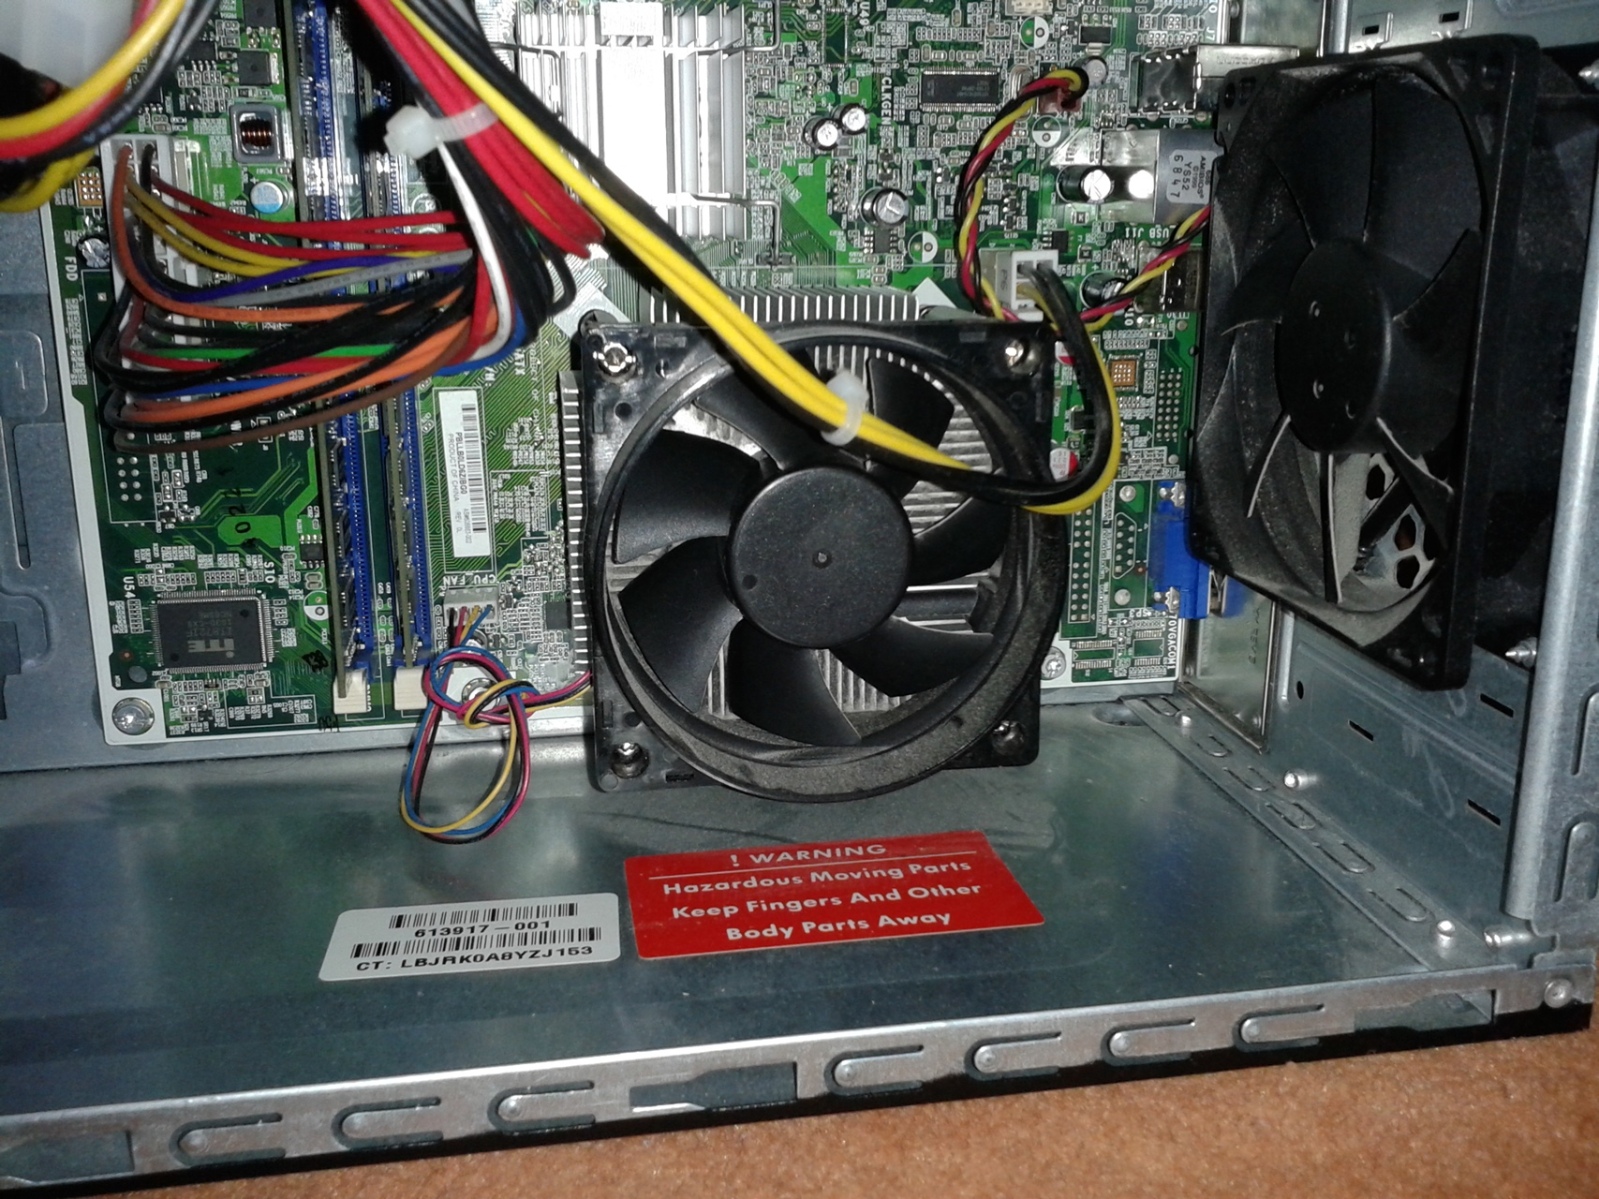  HP500B MT GARANTİLİ FATURALI + 2GB DDR3 + 9800GT 430TL